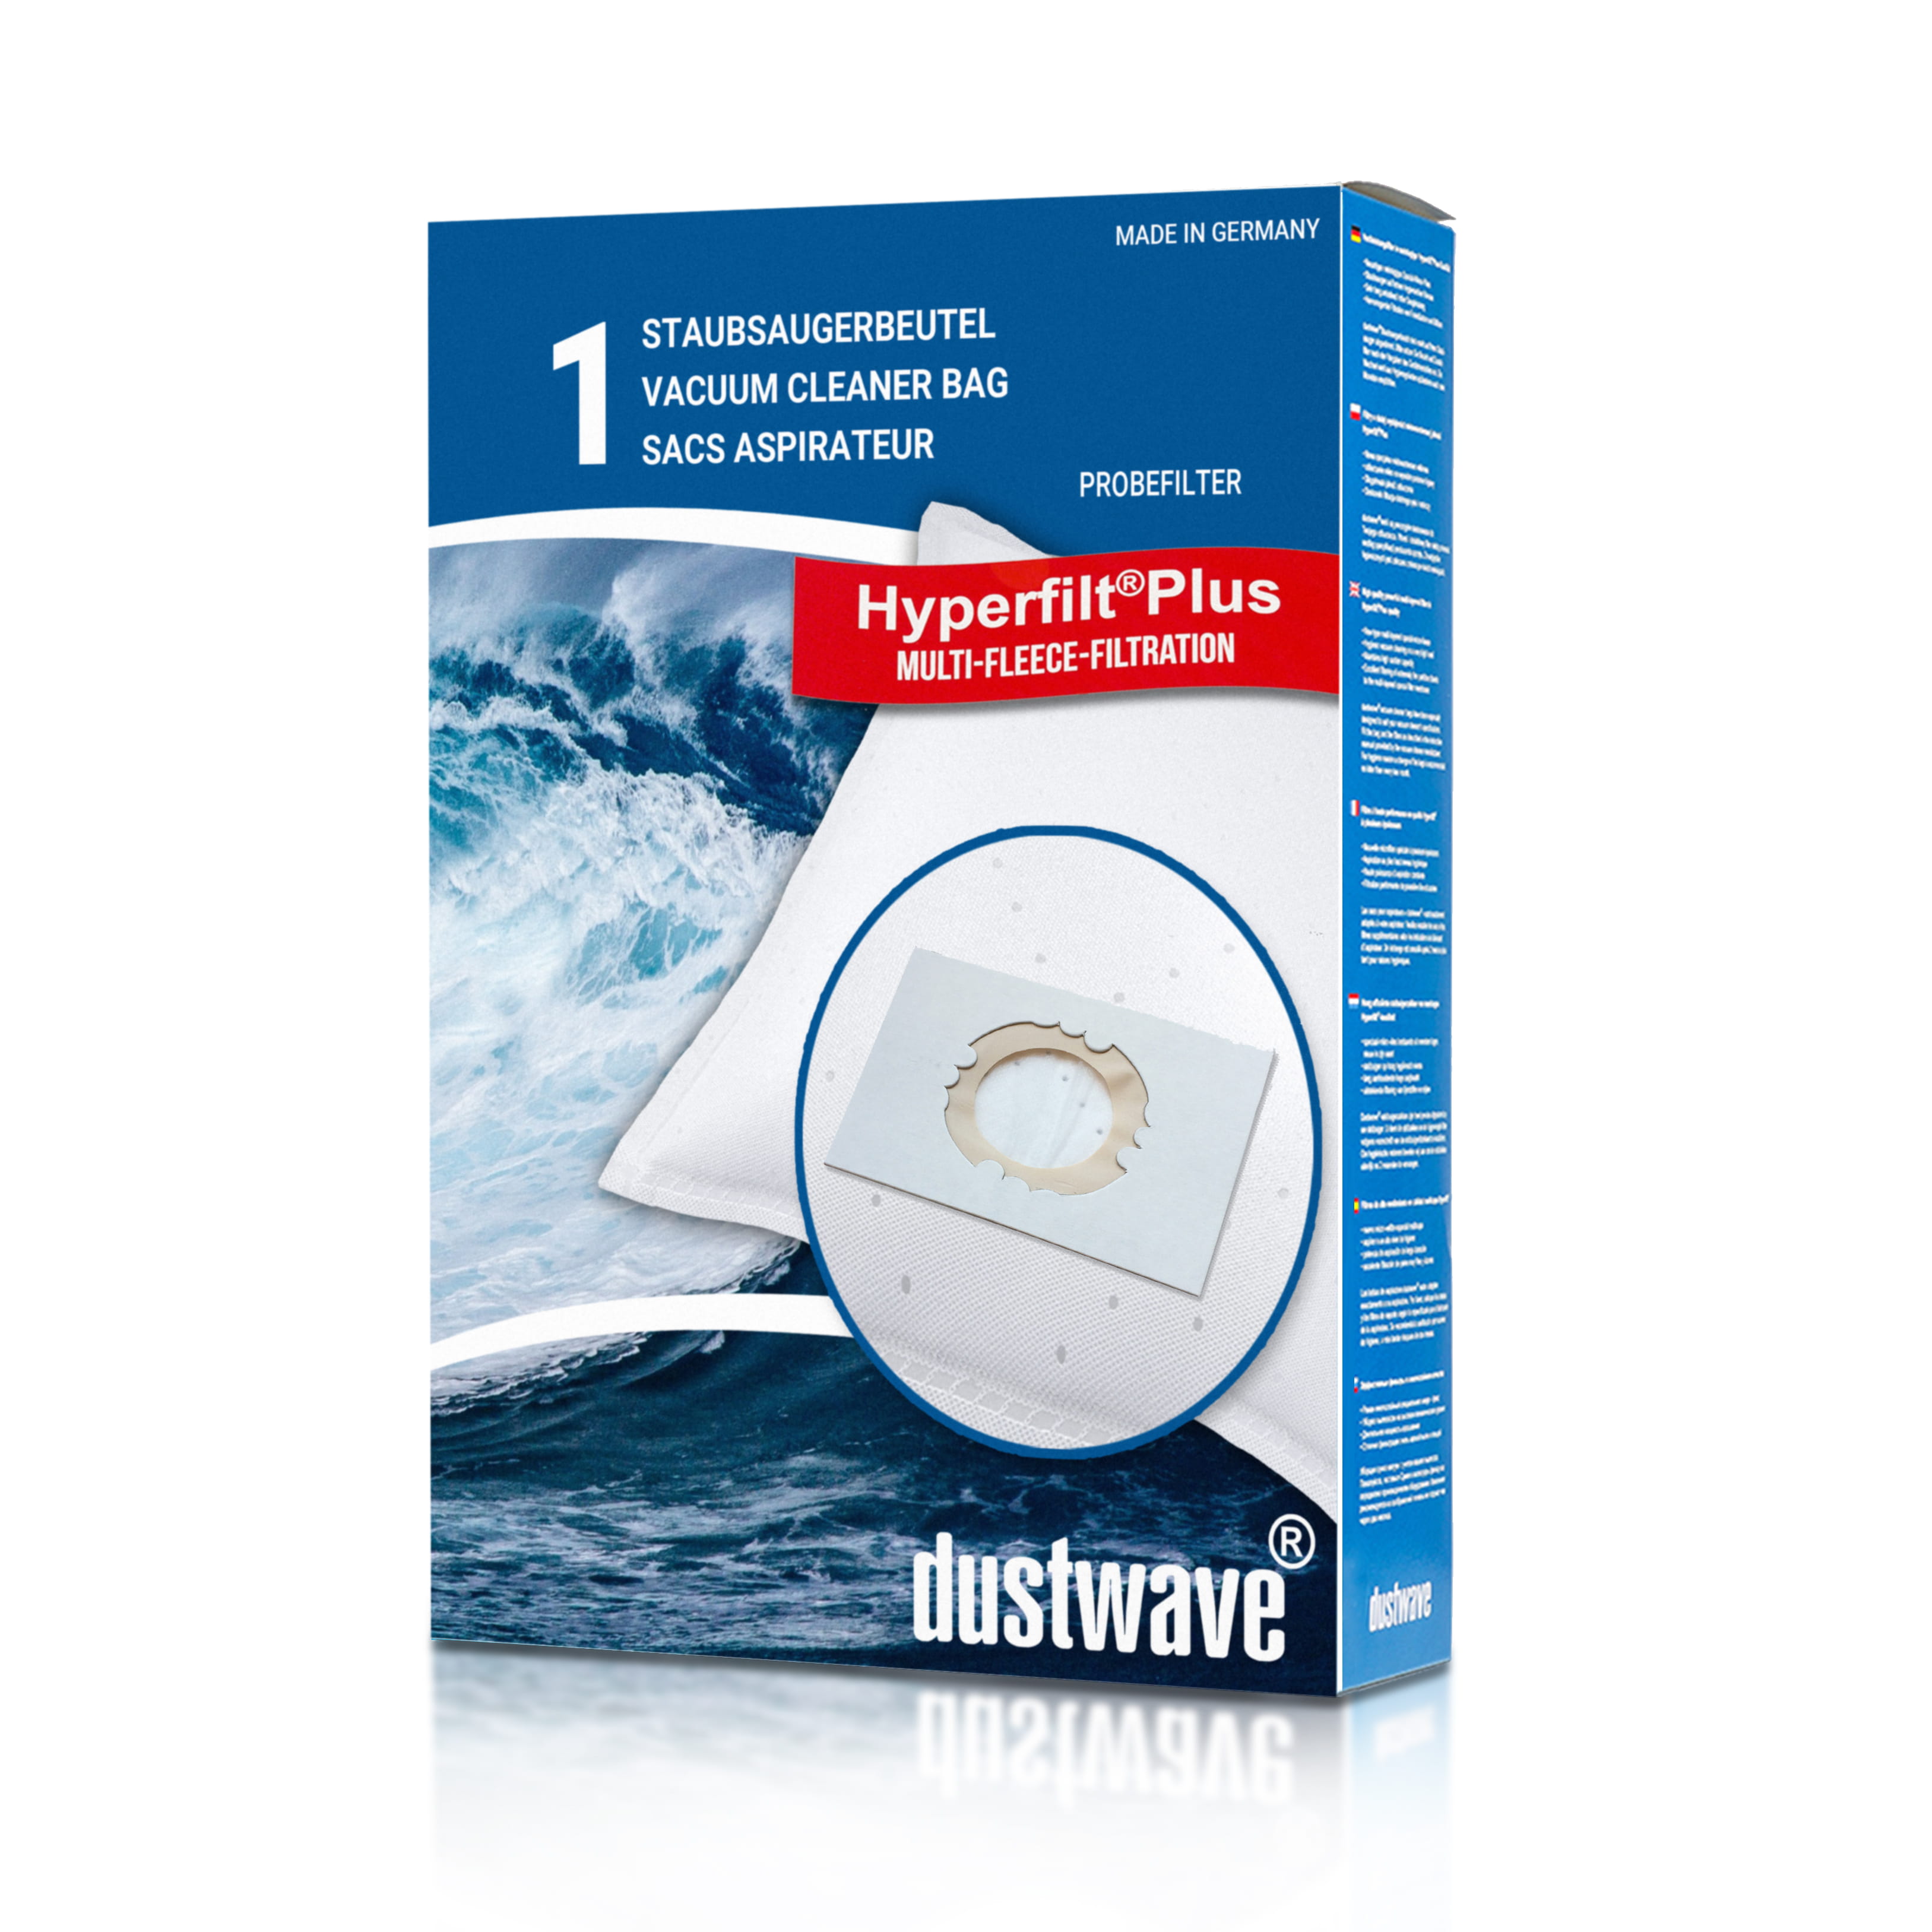 Dustwave® 1 Staubsaugerbeutel für Columbus SW 30 P - hocheffizient mit Hygieneverschluss - Made in Germany